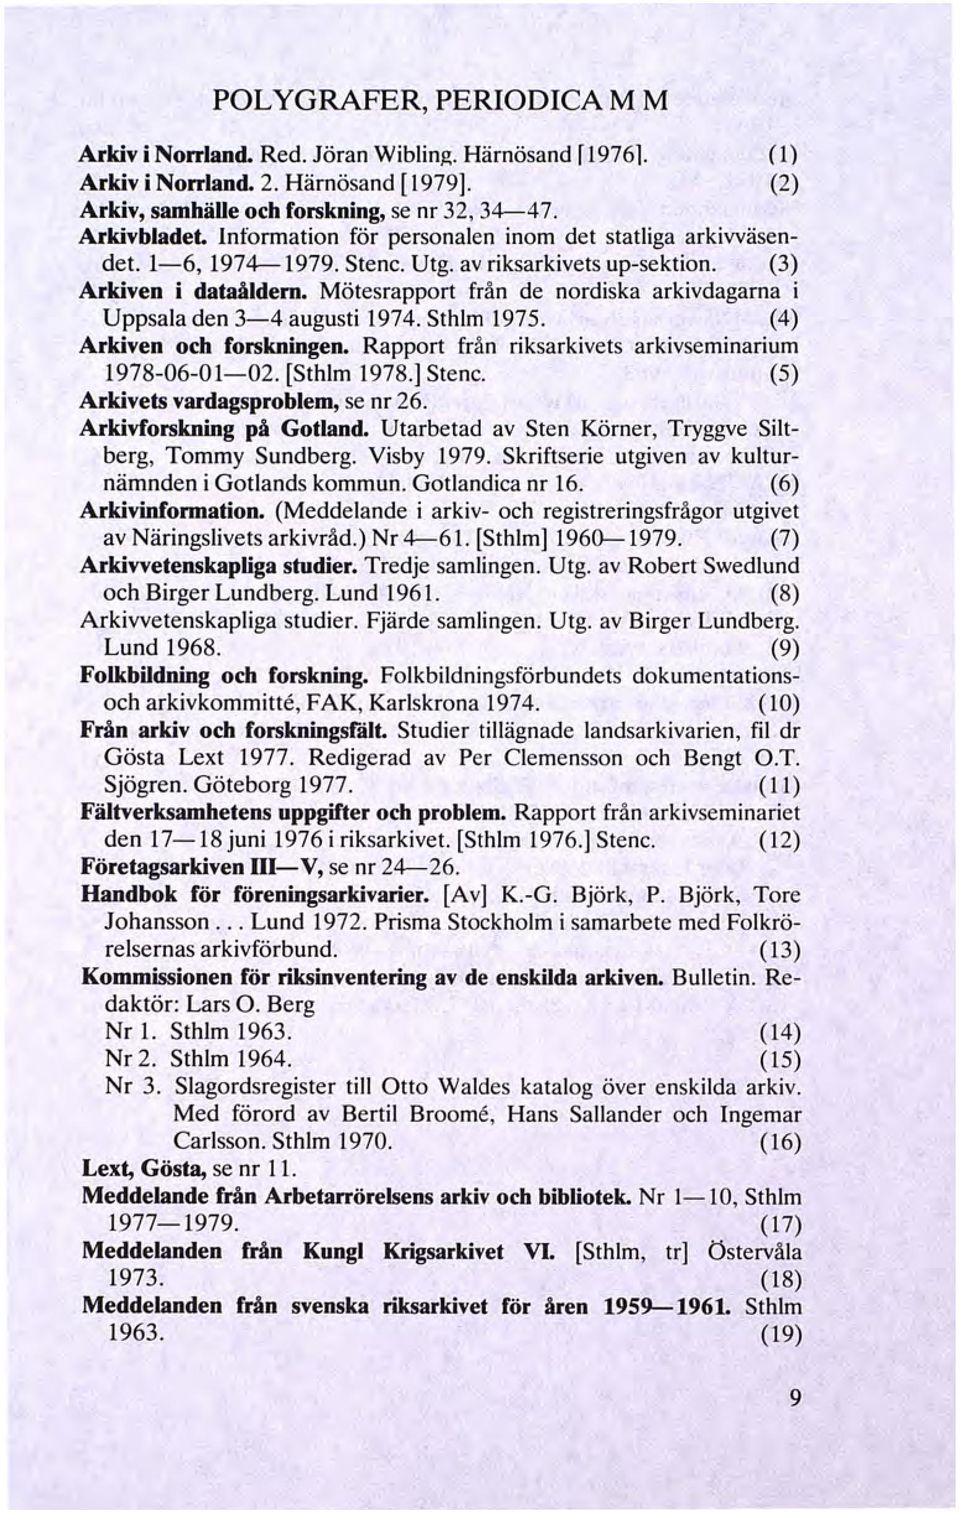 Mötesrapport från de nordiska arkivdagarna i Uppsala den 3-4 augusti 1974. Sthlm 1975. (4) Arkiven och forskningen. Rapport från riksarkivets arkivseminarium 1978-06-01-02. [Sthlm 1978.] Stenc.